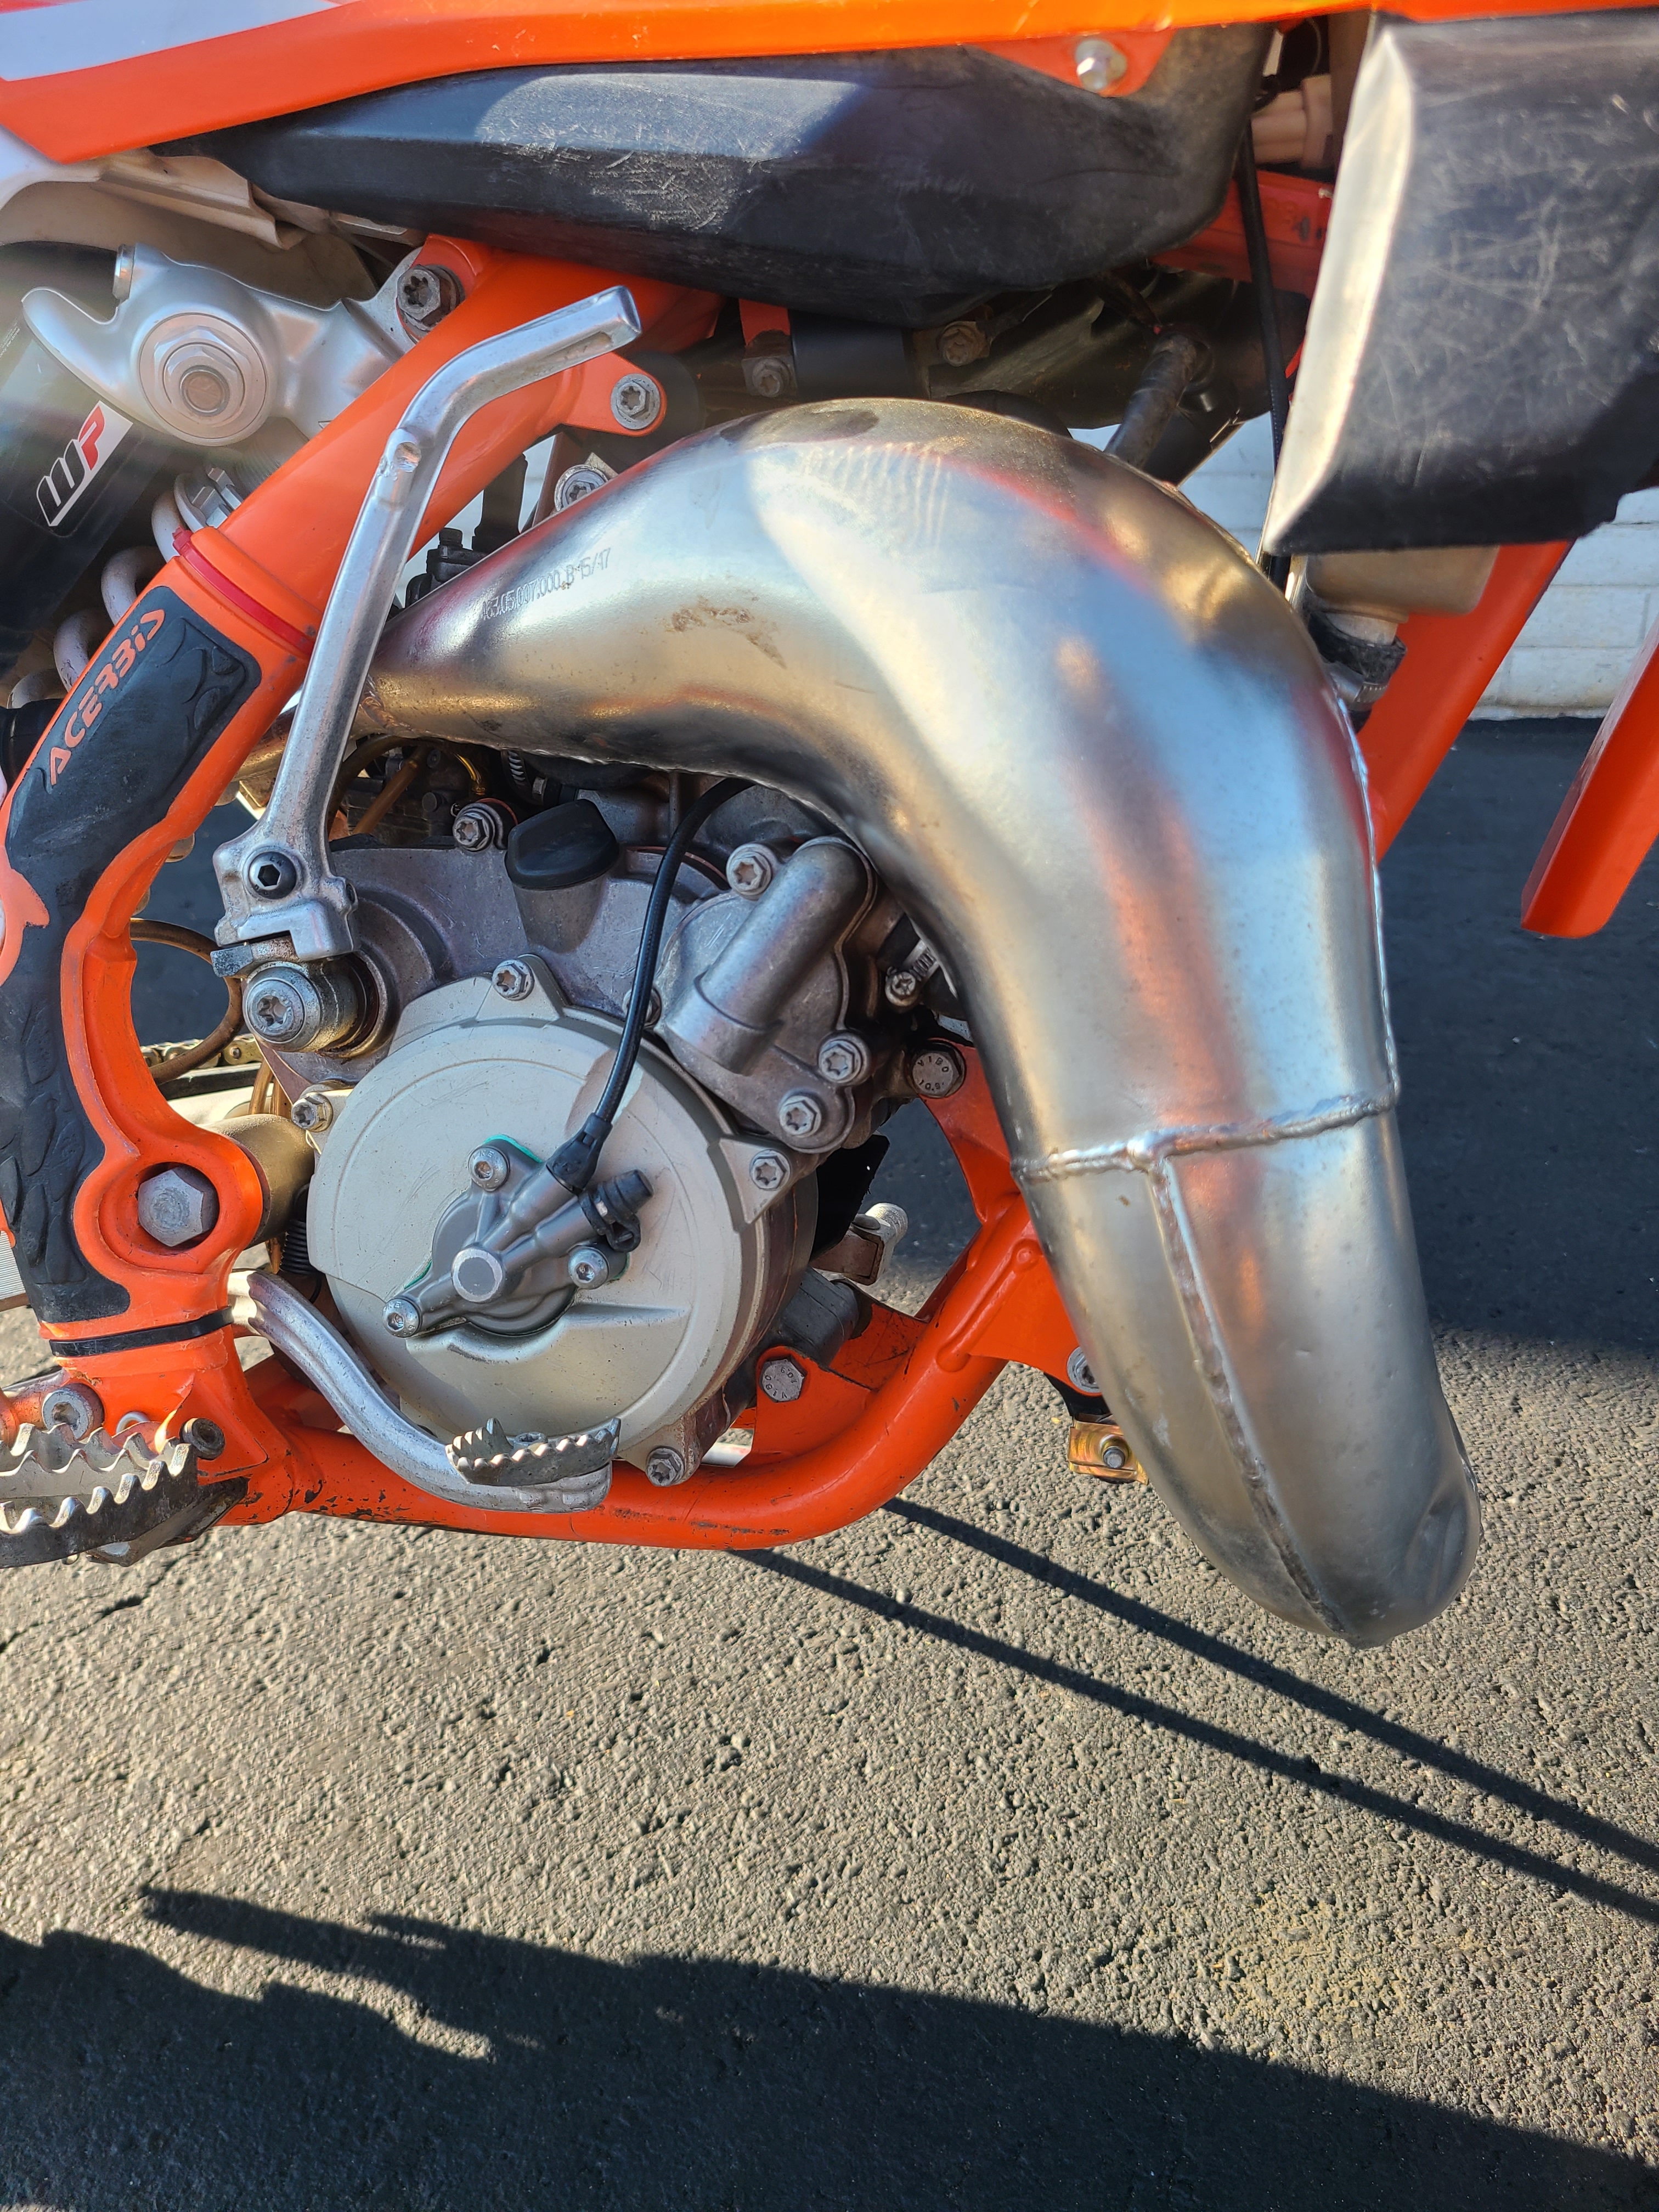 2018 KTM SX 65 at Bobby J's Yamaha, Albuquerque, NM 87110